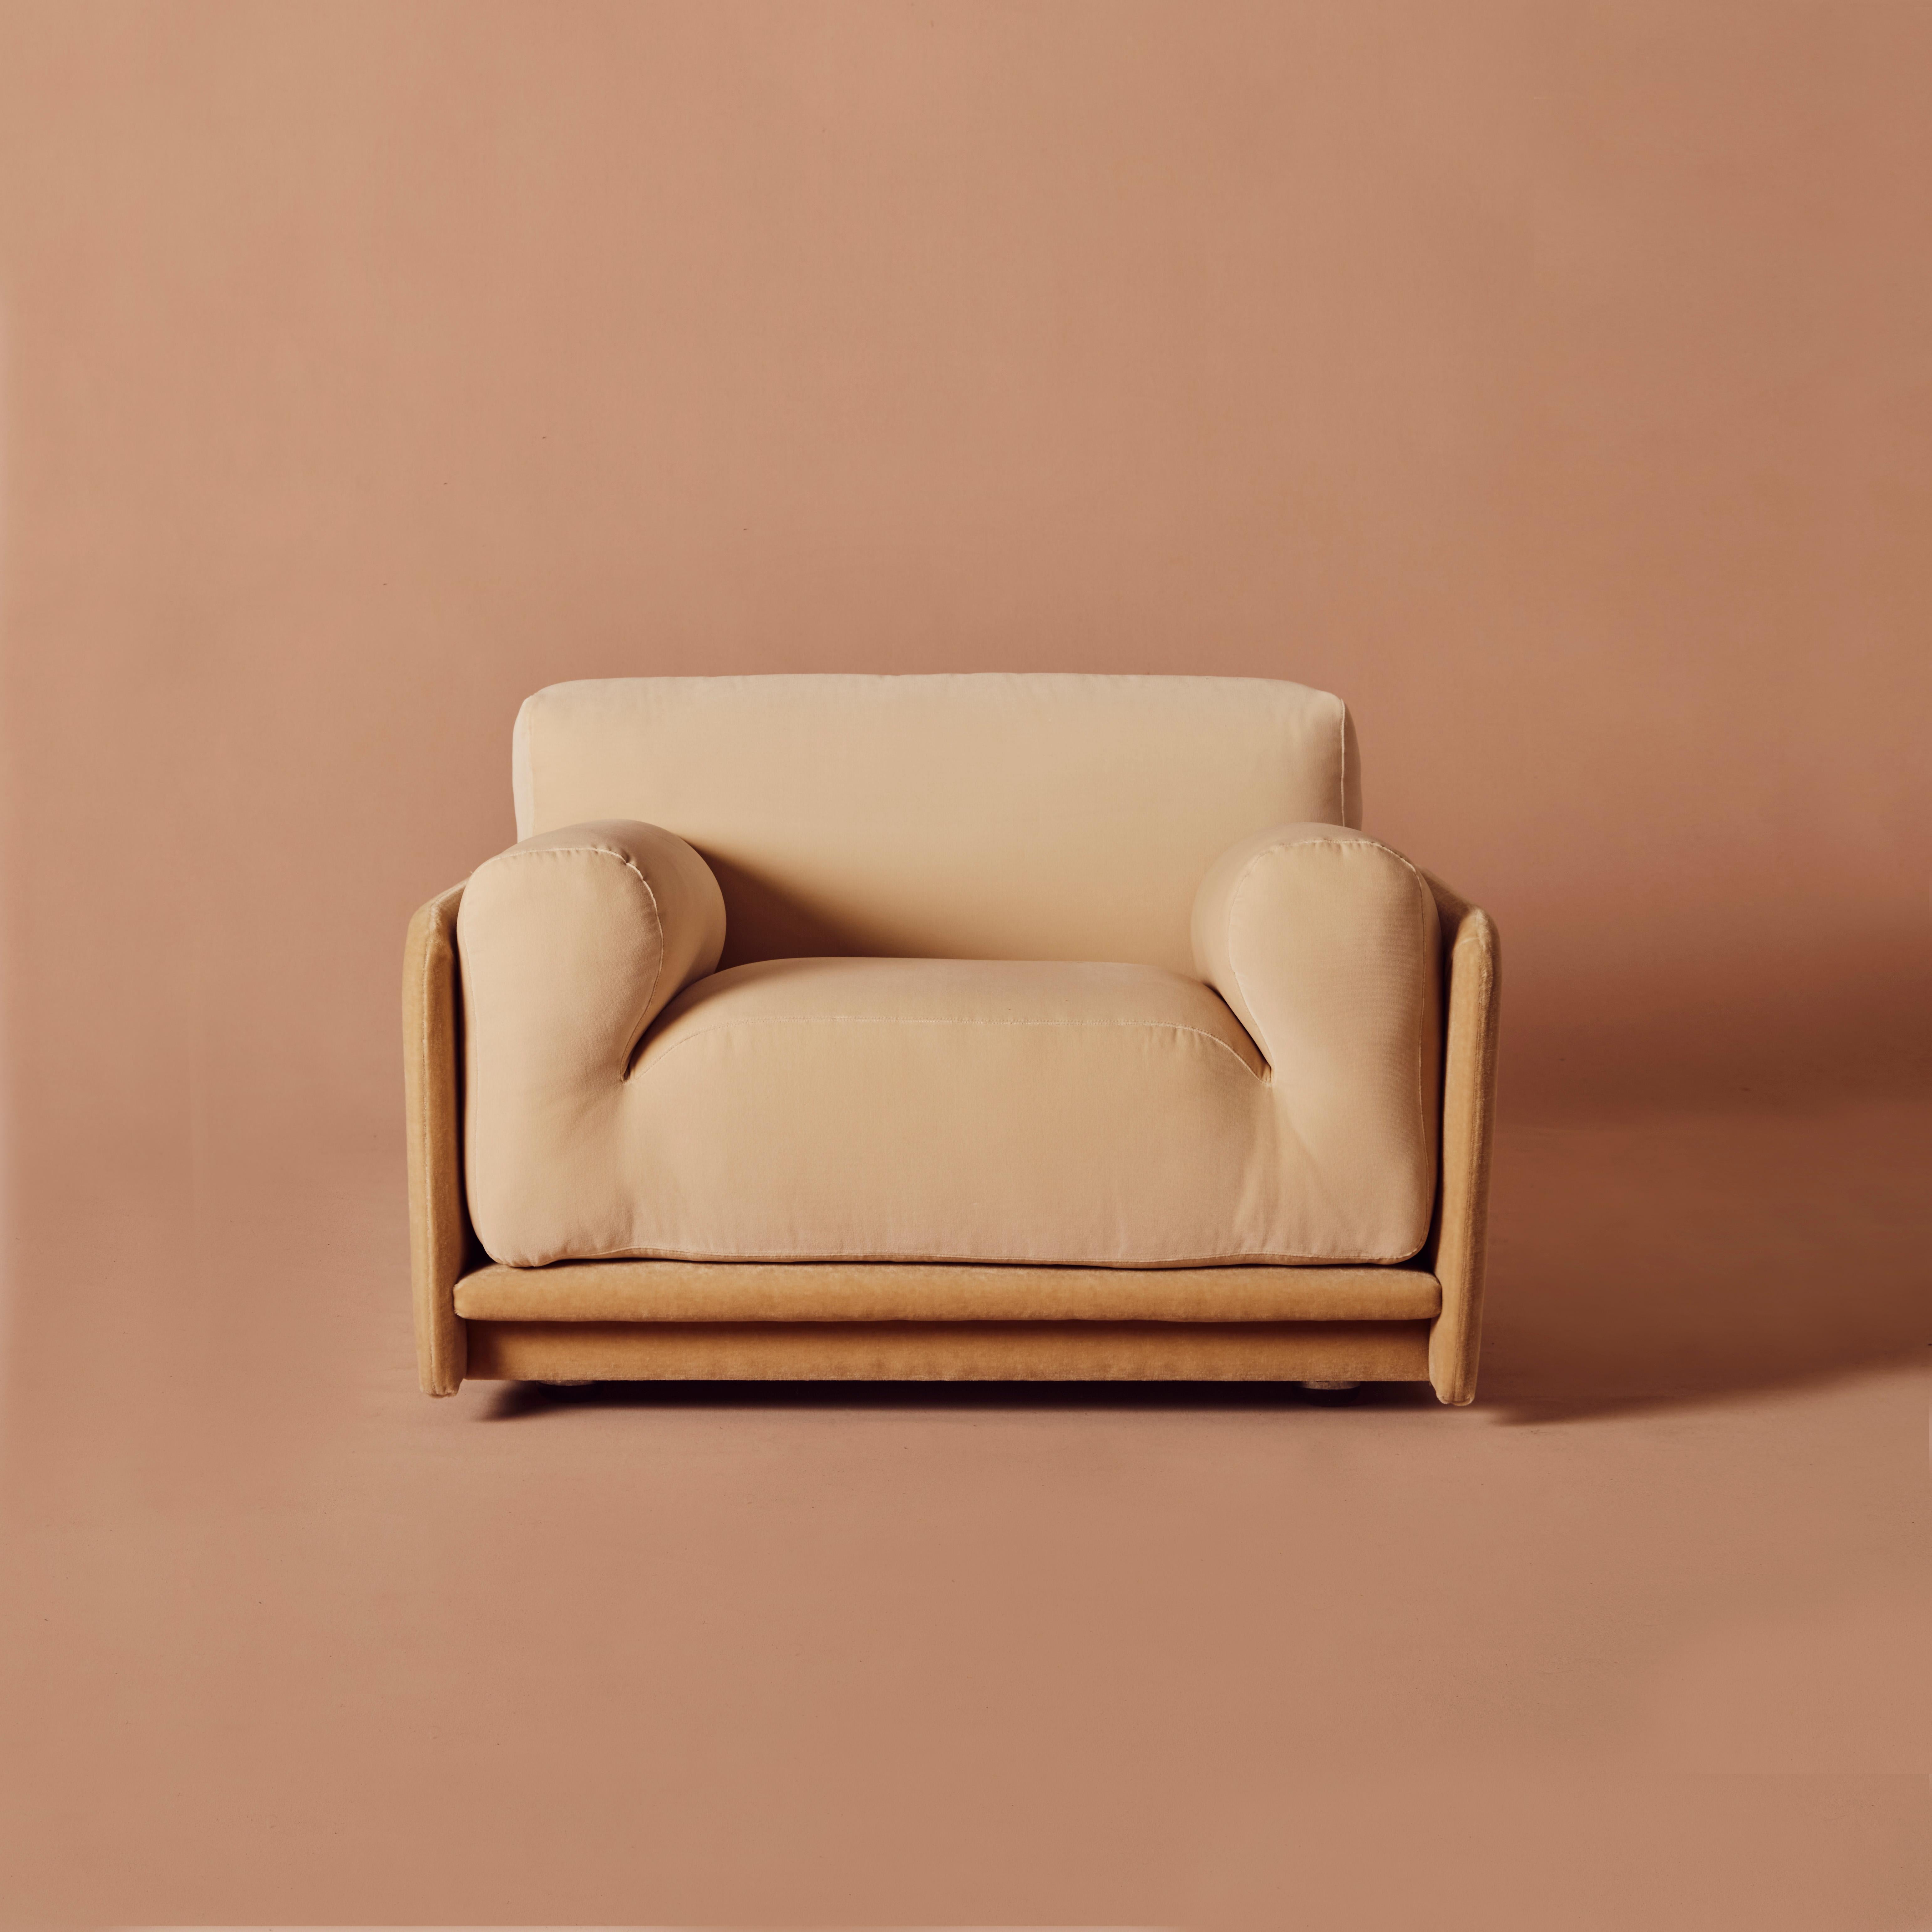 Unglaublich weicher und bequemer 1970er Sessel. Mit Regents Parchment und Marci Mohair Mustock von Yarn Collective gepolstert, macht das lustige Zusammenspiel von Farbtönen und Texturen diese formal auffälligen Sessel noch schöner. 

Drei mit